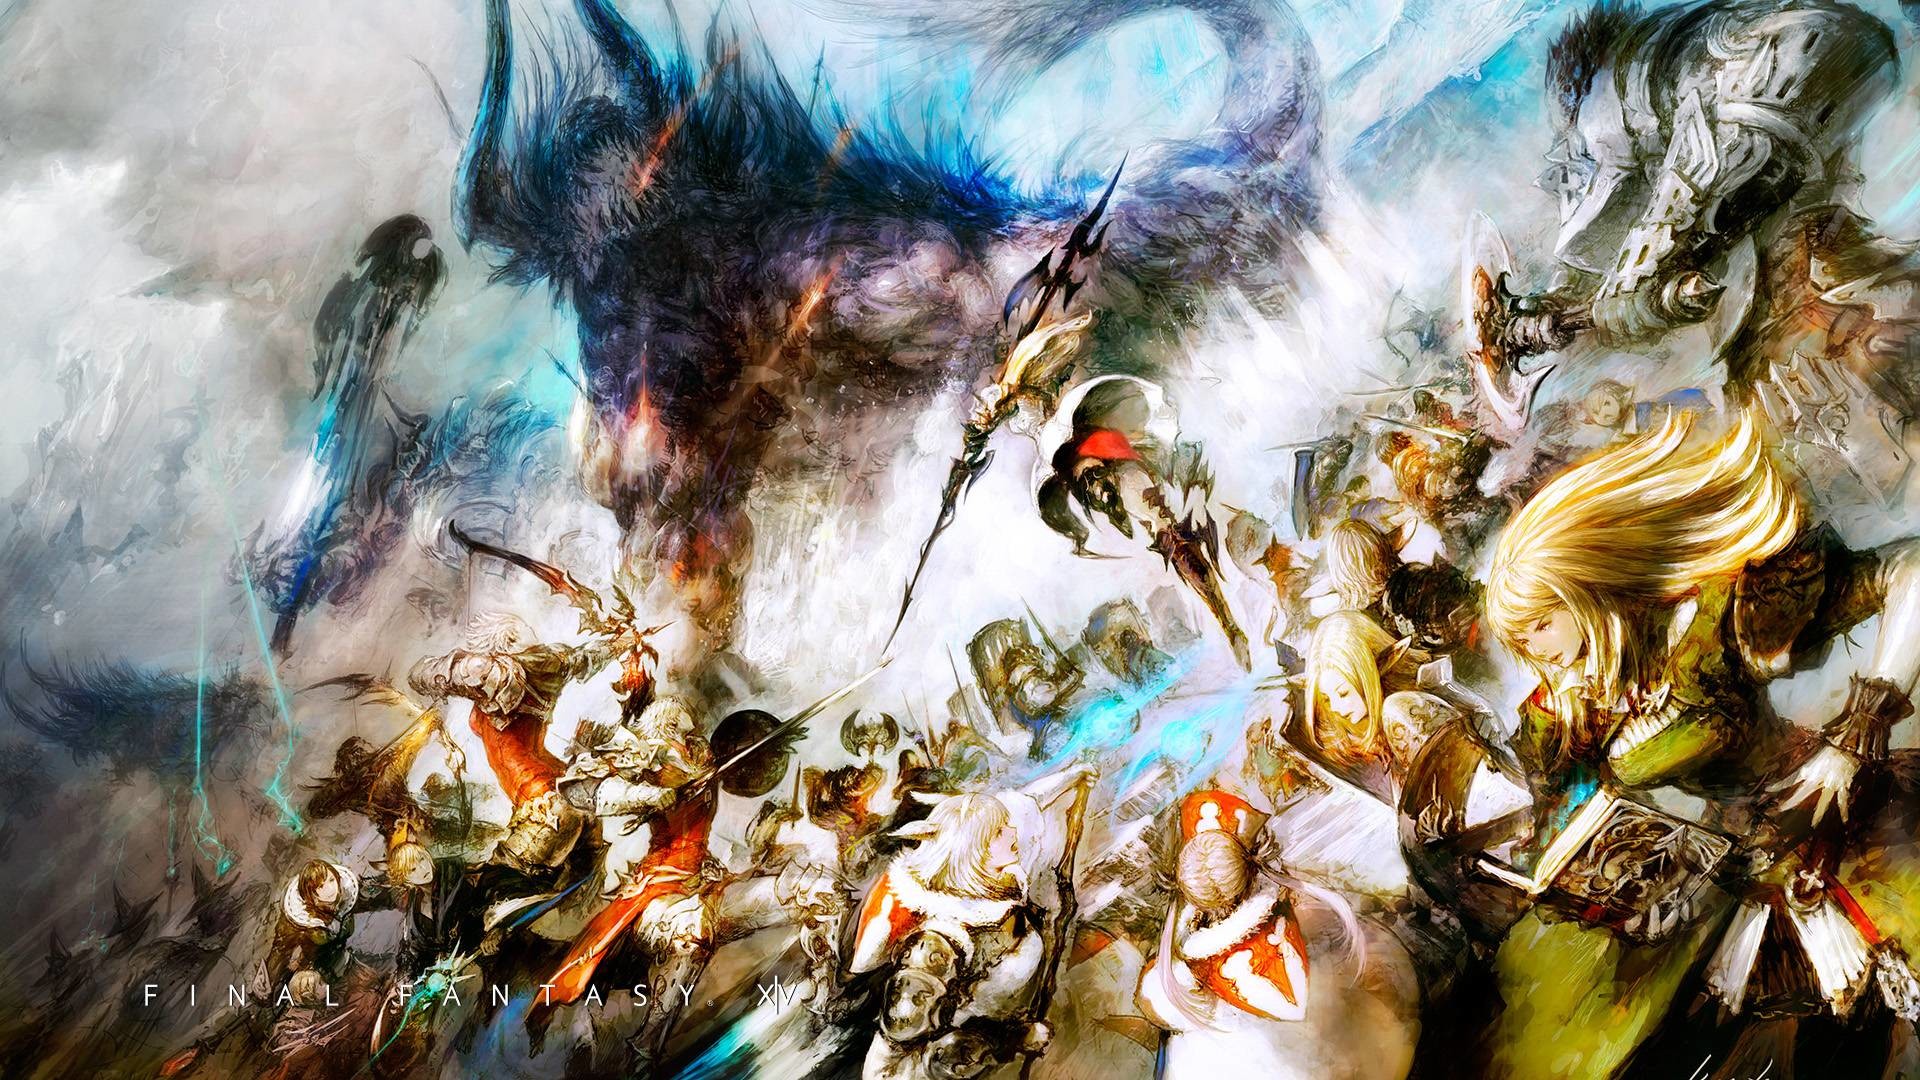 Riding Chocobo Final Fantasy Xv Full Hd / 1920ã 1080 - Final Fantasy 15 Wallpaper Art , HD Wallpaper & Backgrounds